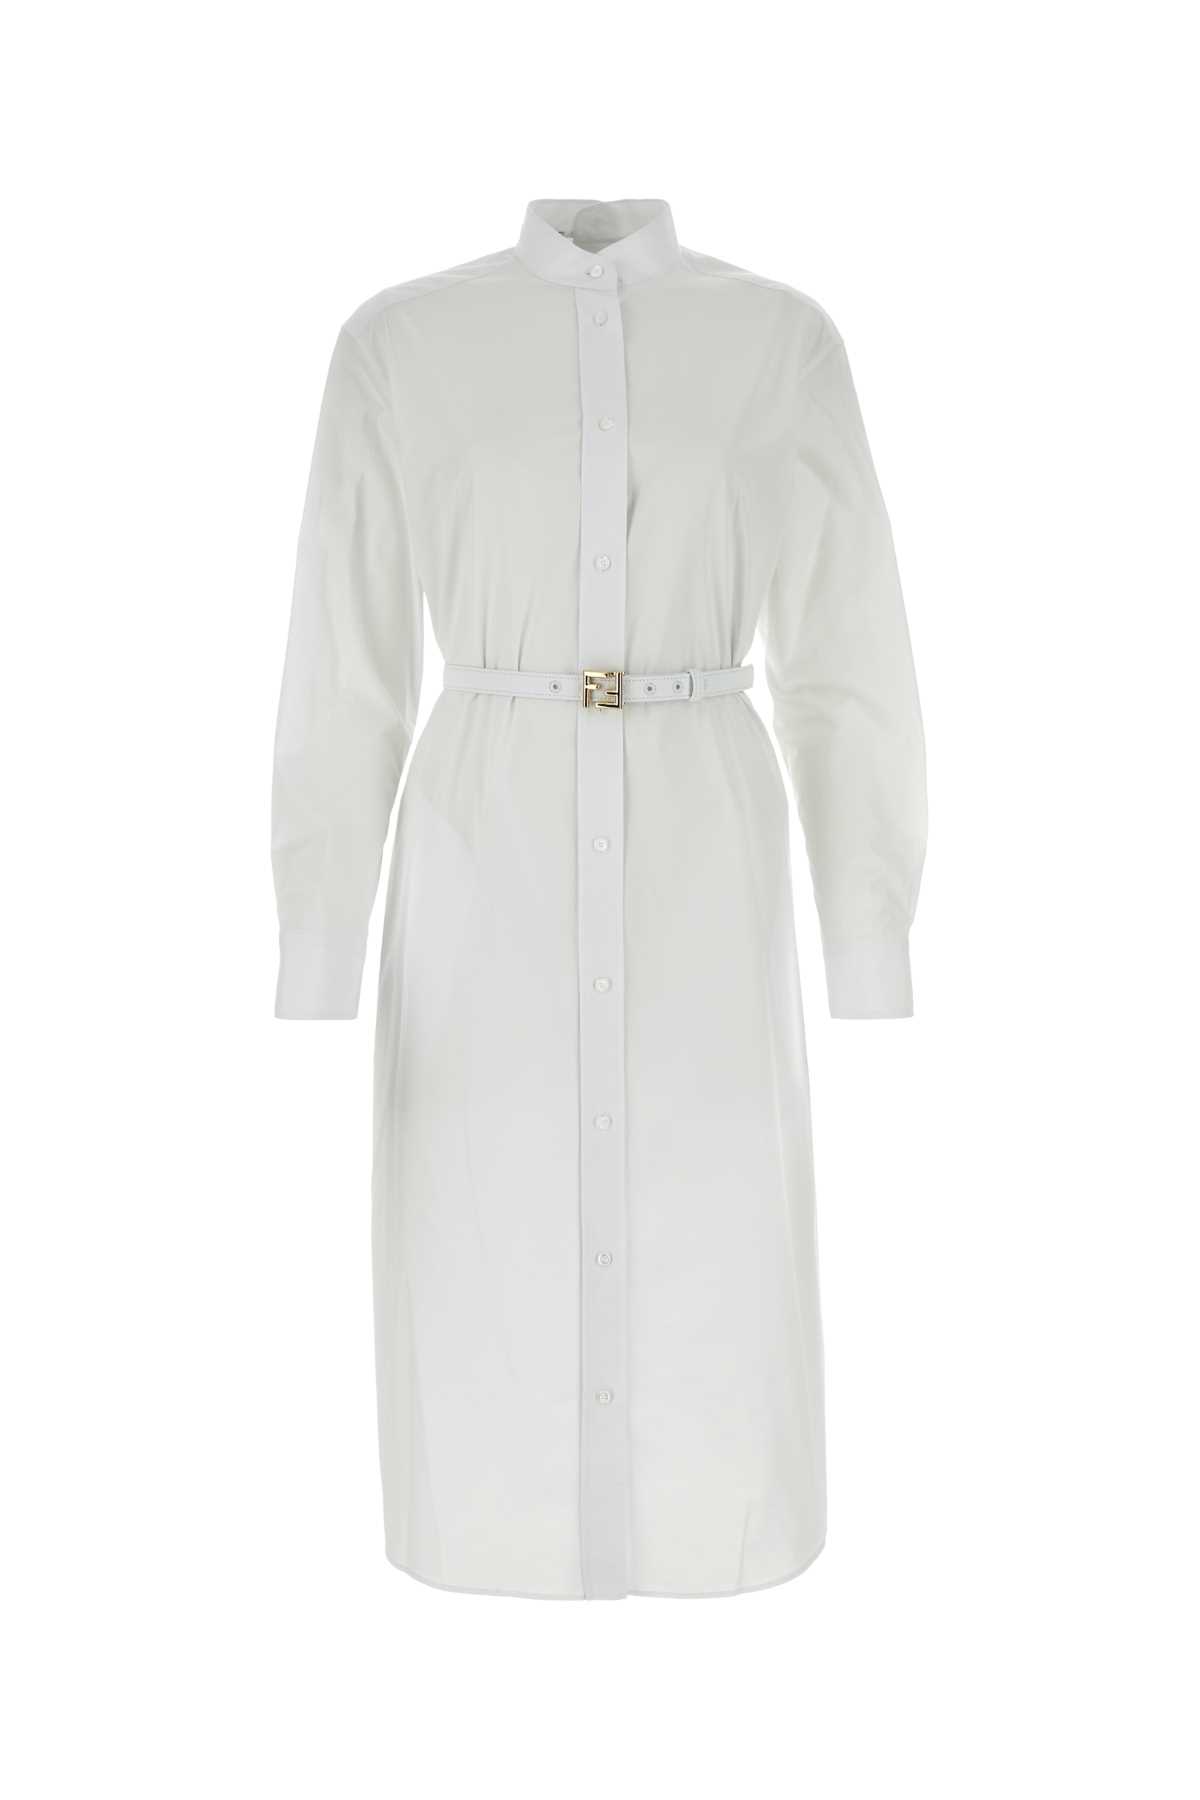 FENDI WHITE POPLIN SHIRT DRESS